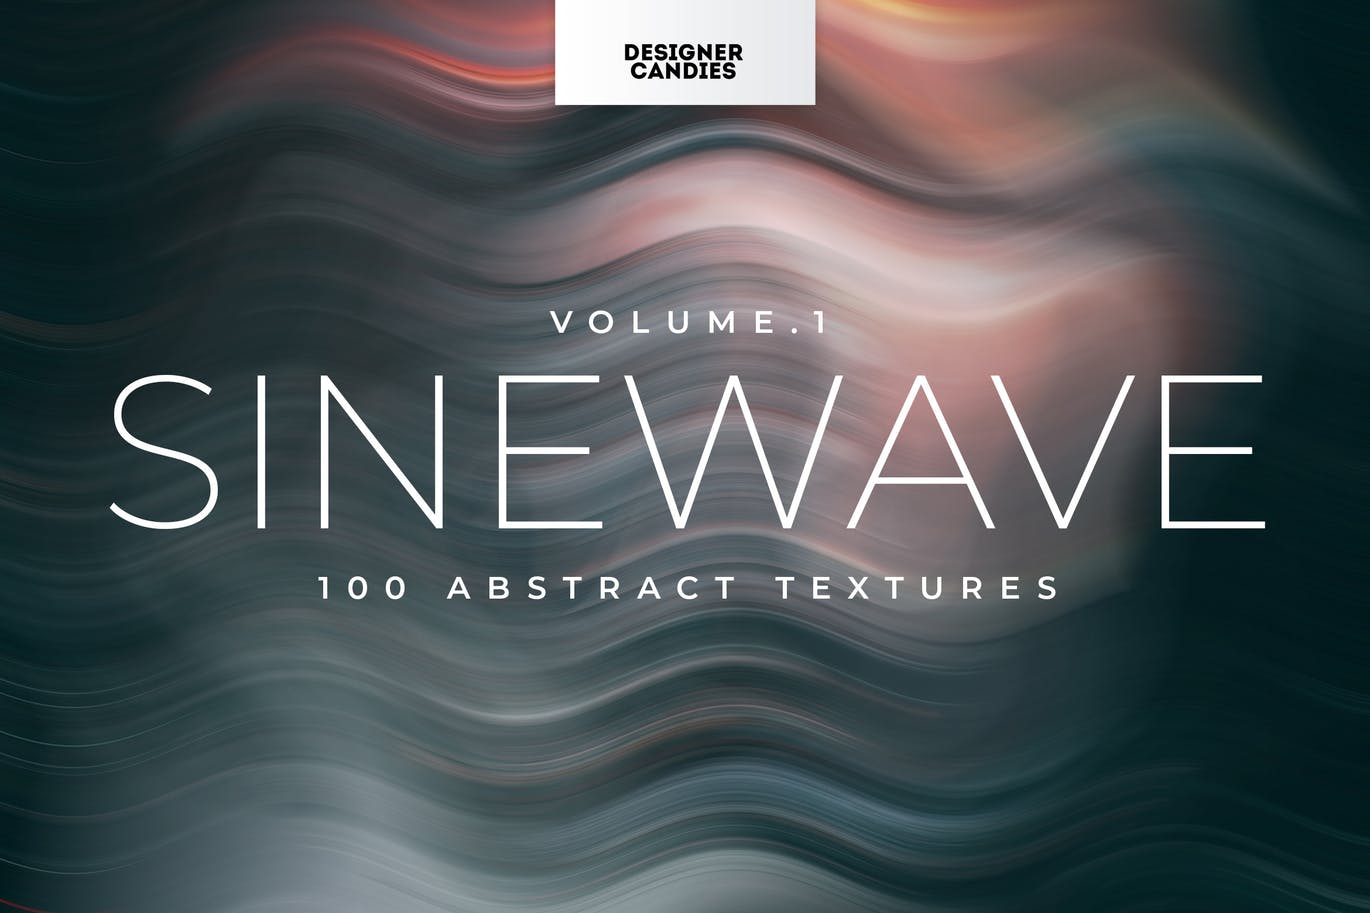 100个抽象波浪纹理和背景包 100 Abstract Textures & Backgrounds Pack 图片素材 第1张